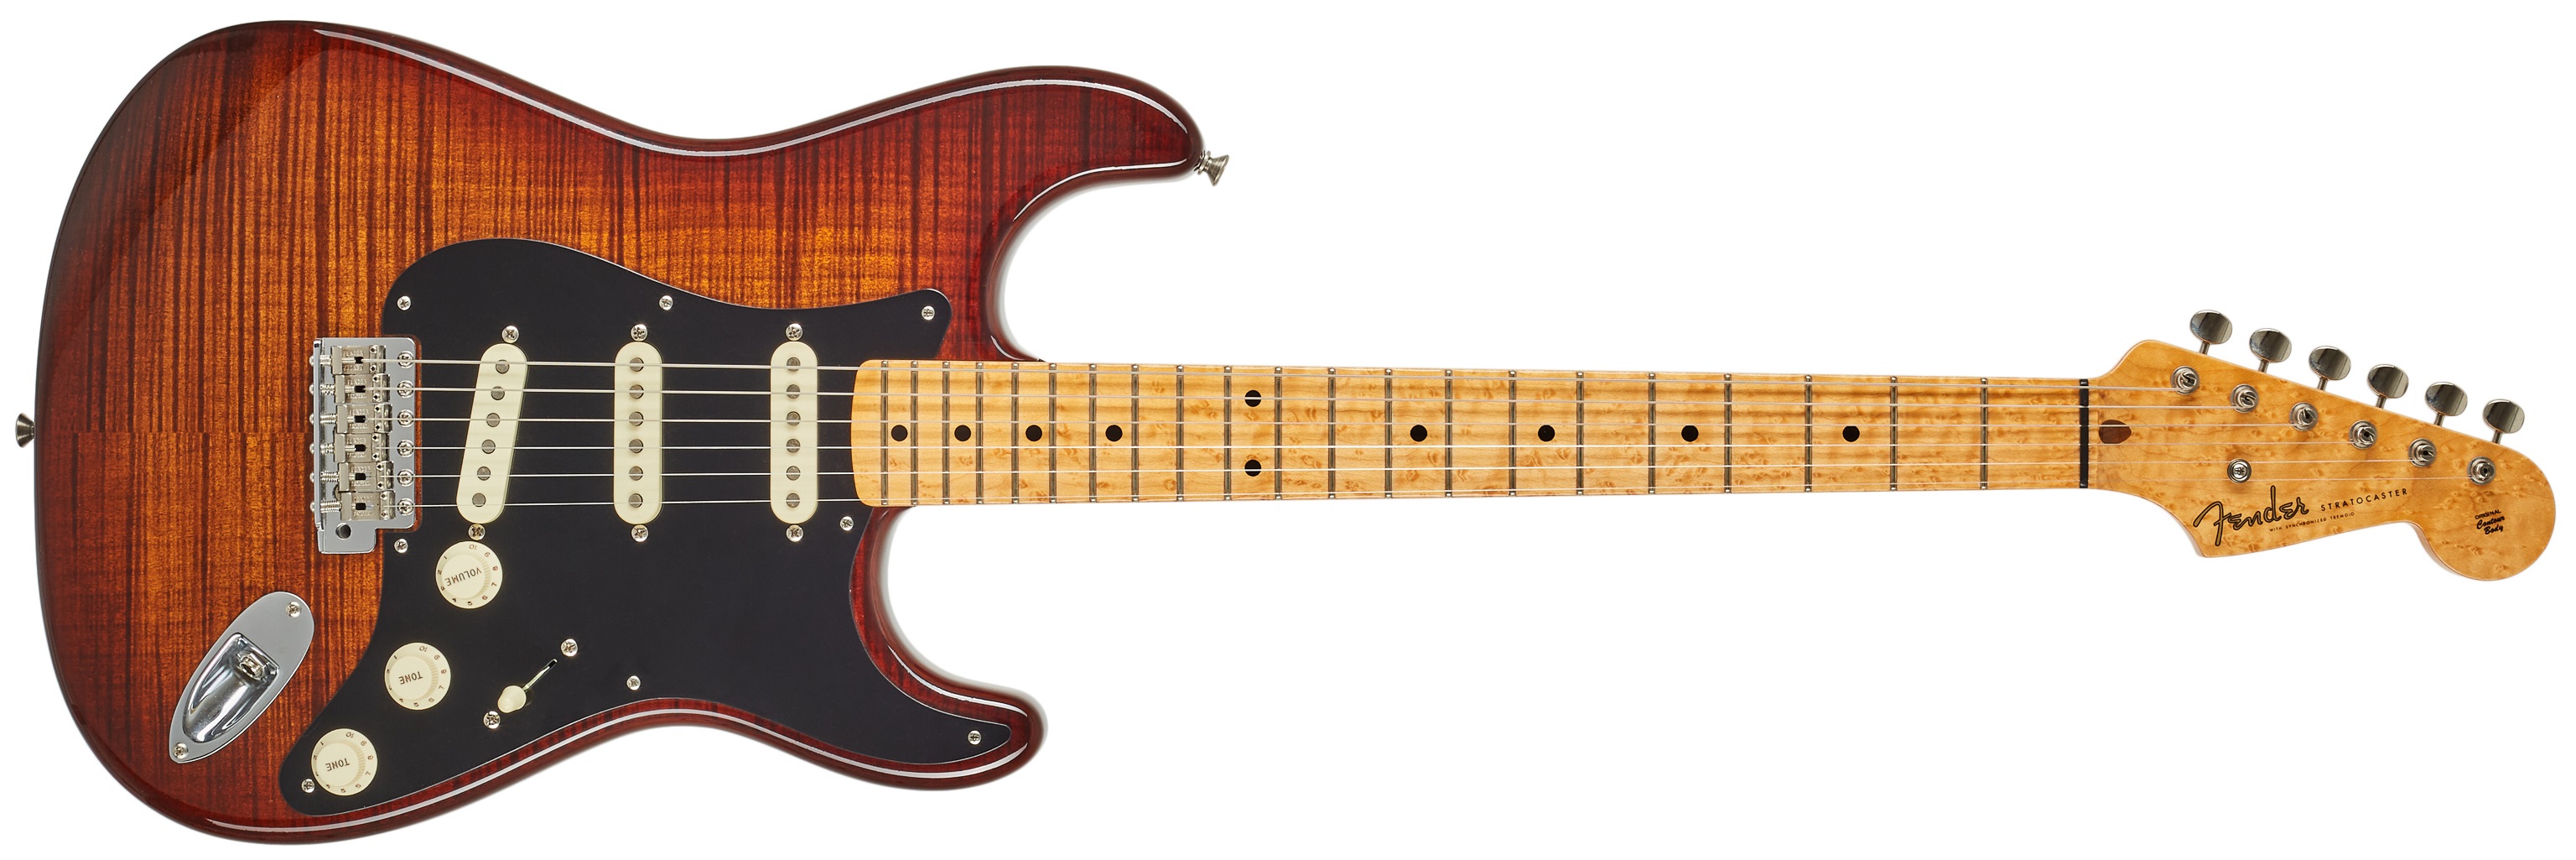 Fender Custom Shop 55 Stratocaster Masterbuilt Ron Thorn LCC